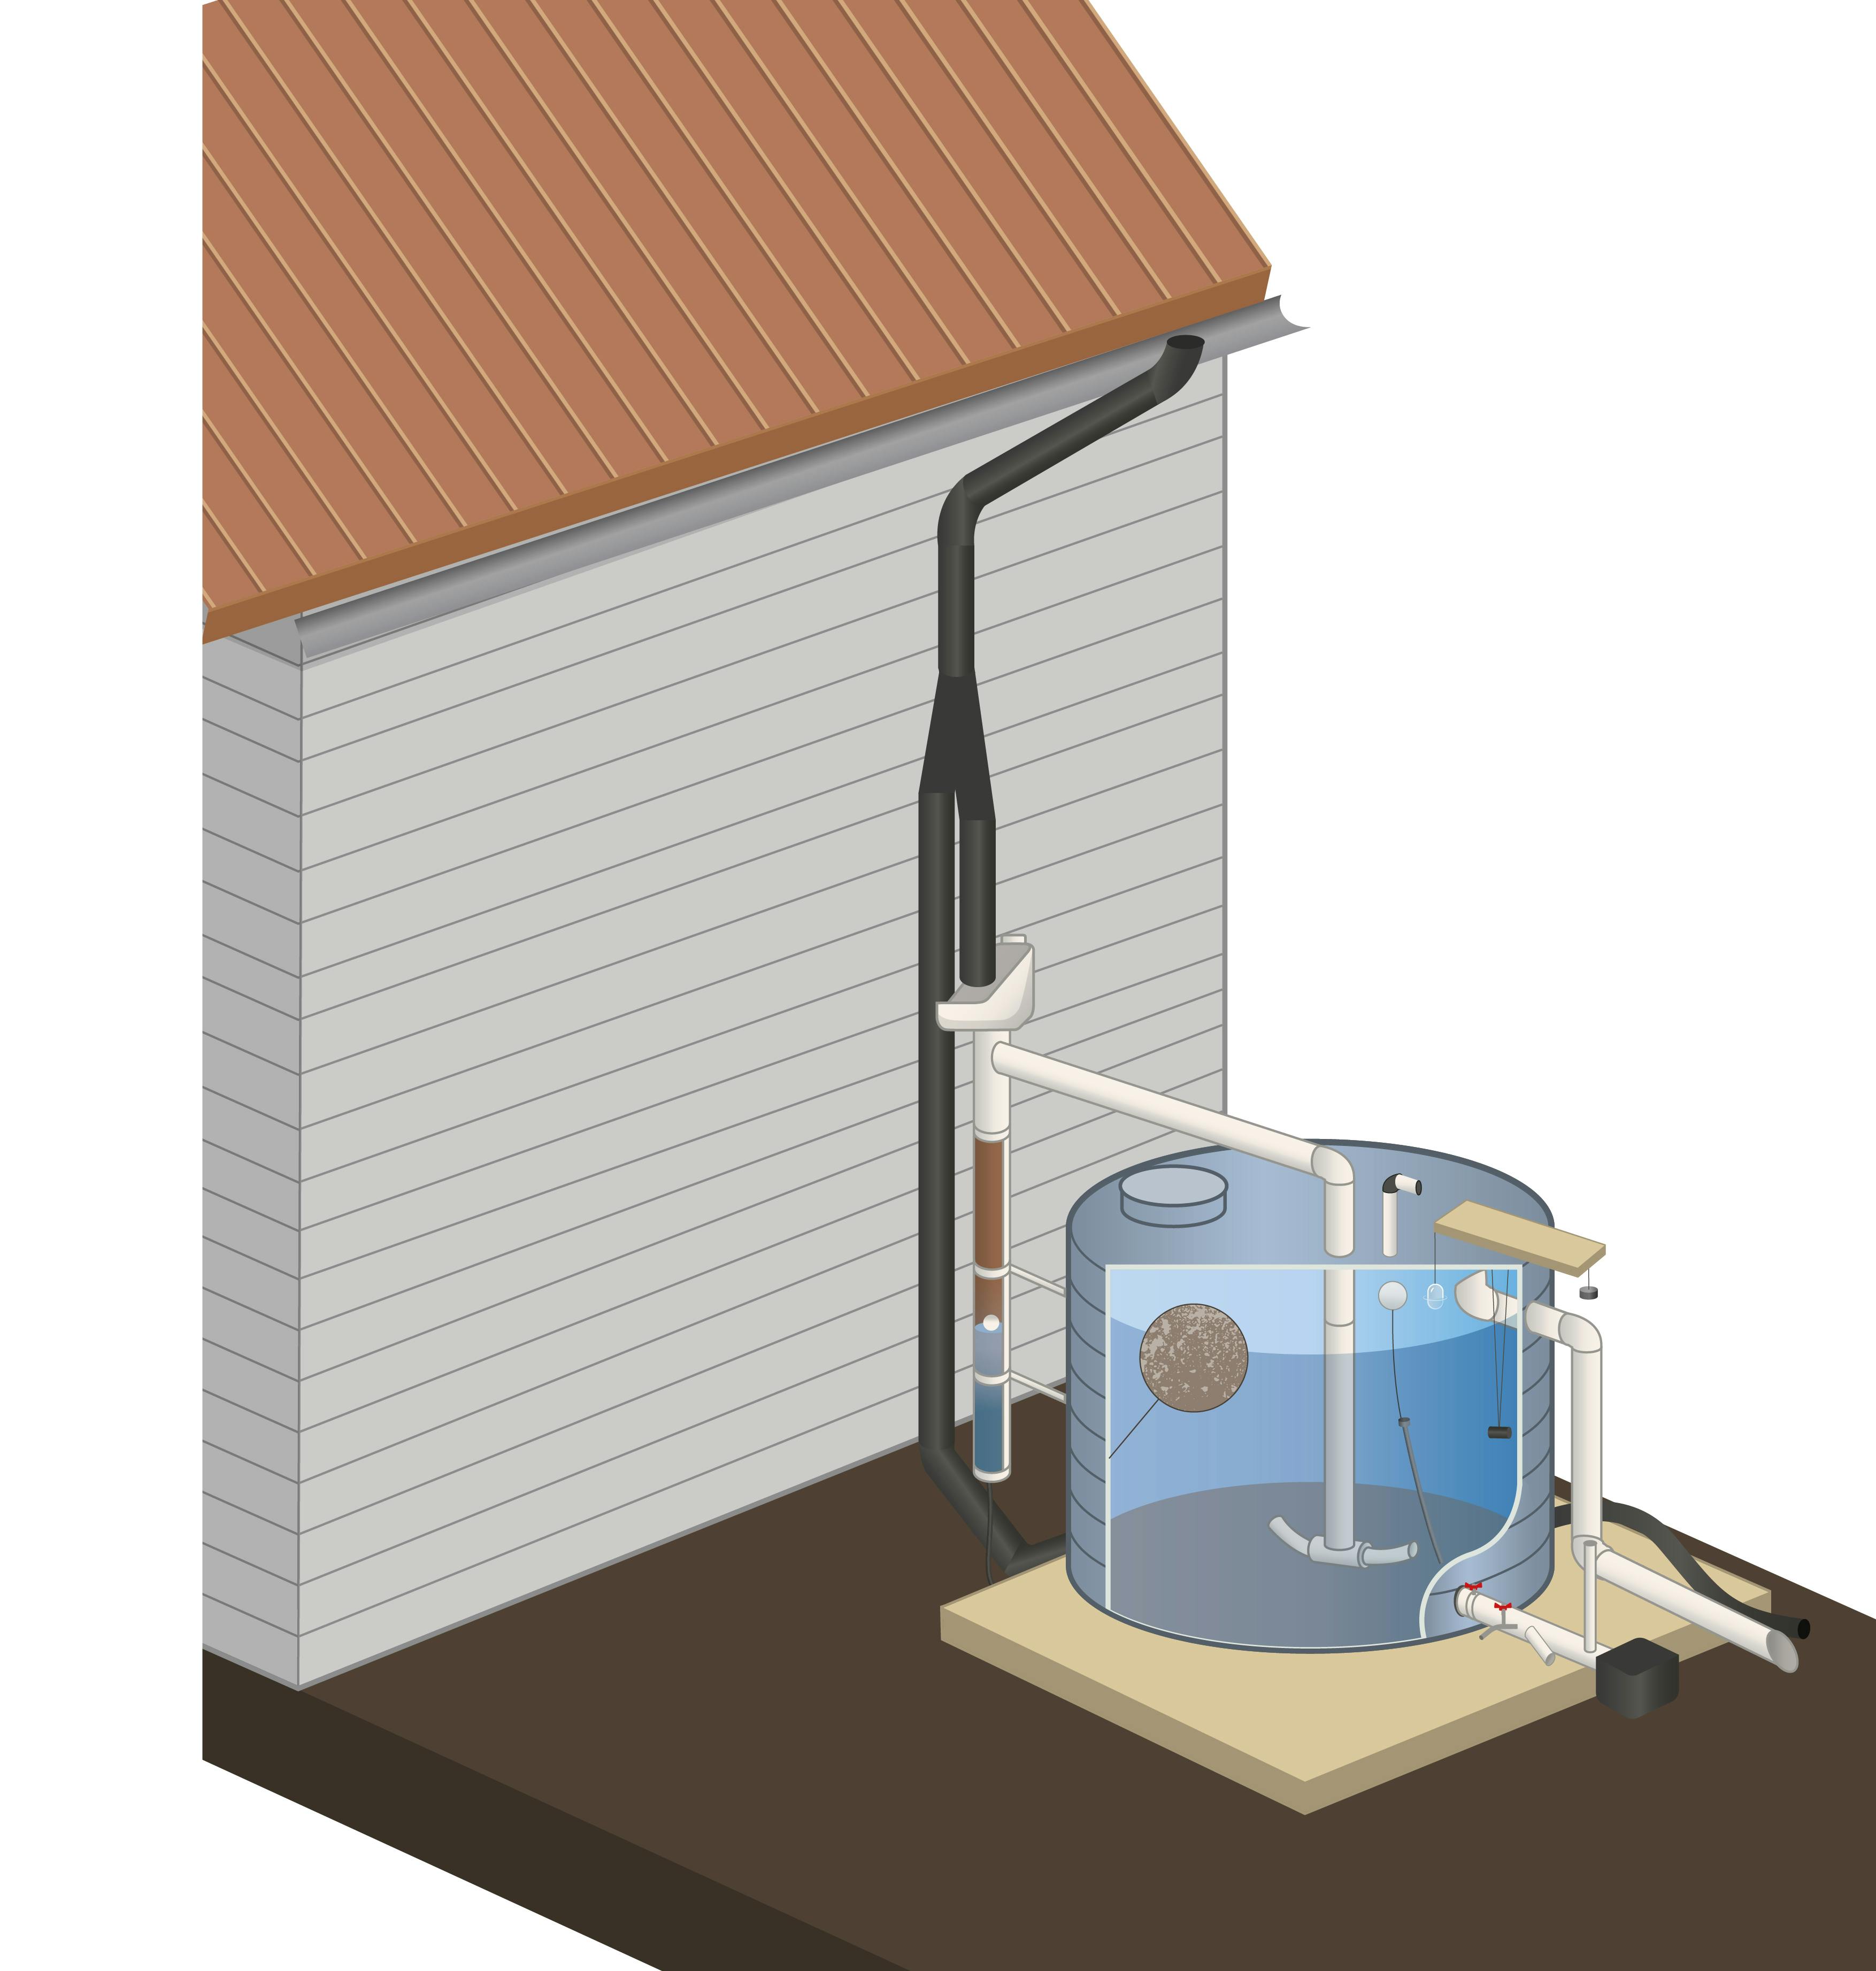 Schema des éléments d'un système de collecte d'eau de pluie hors-sol ou aérien